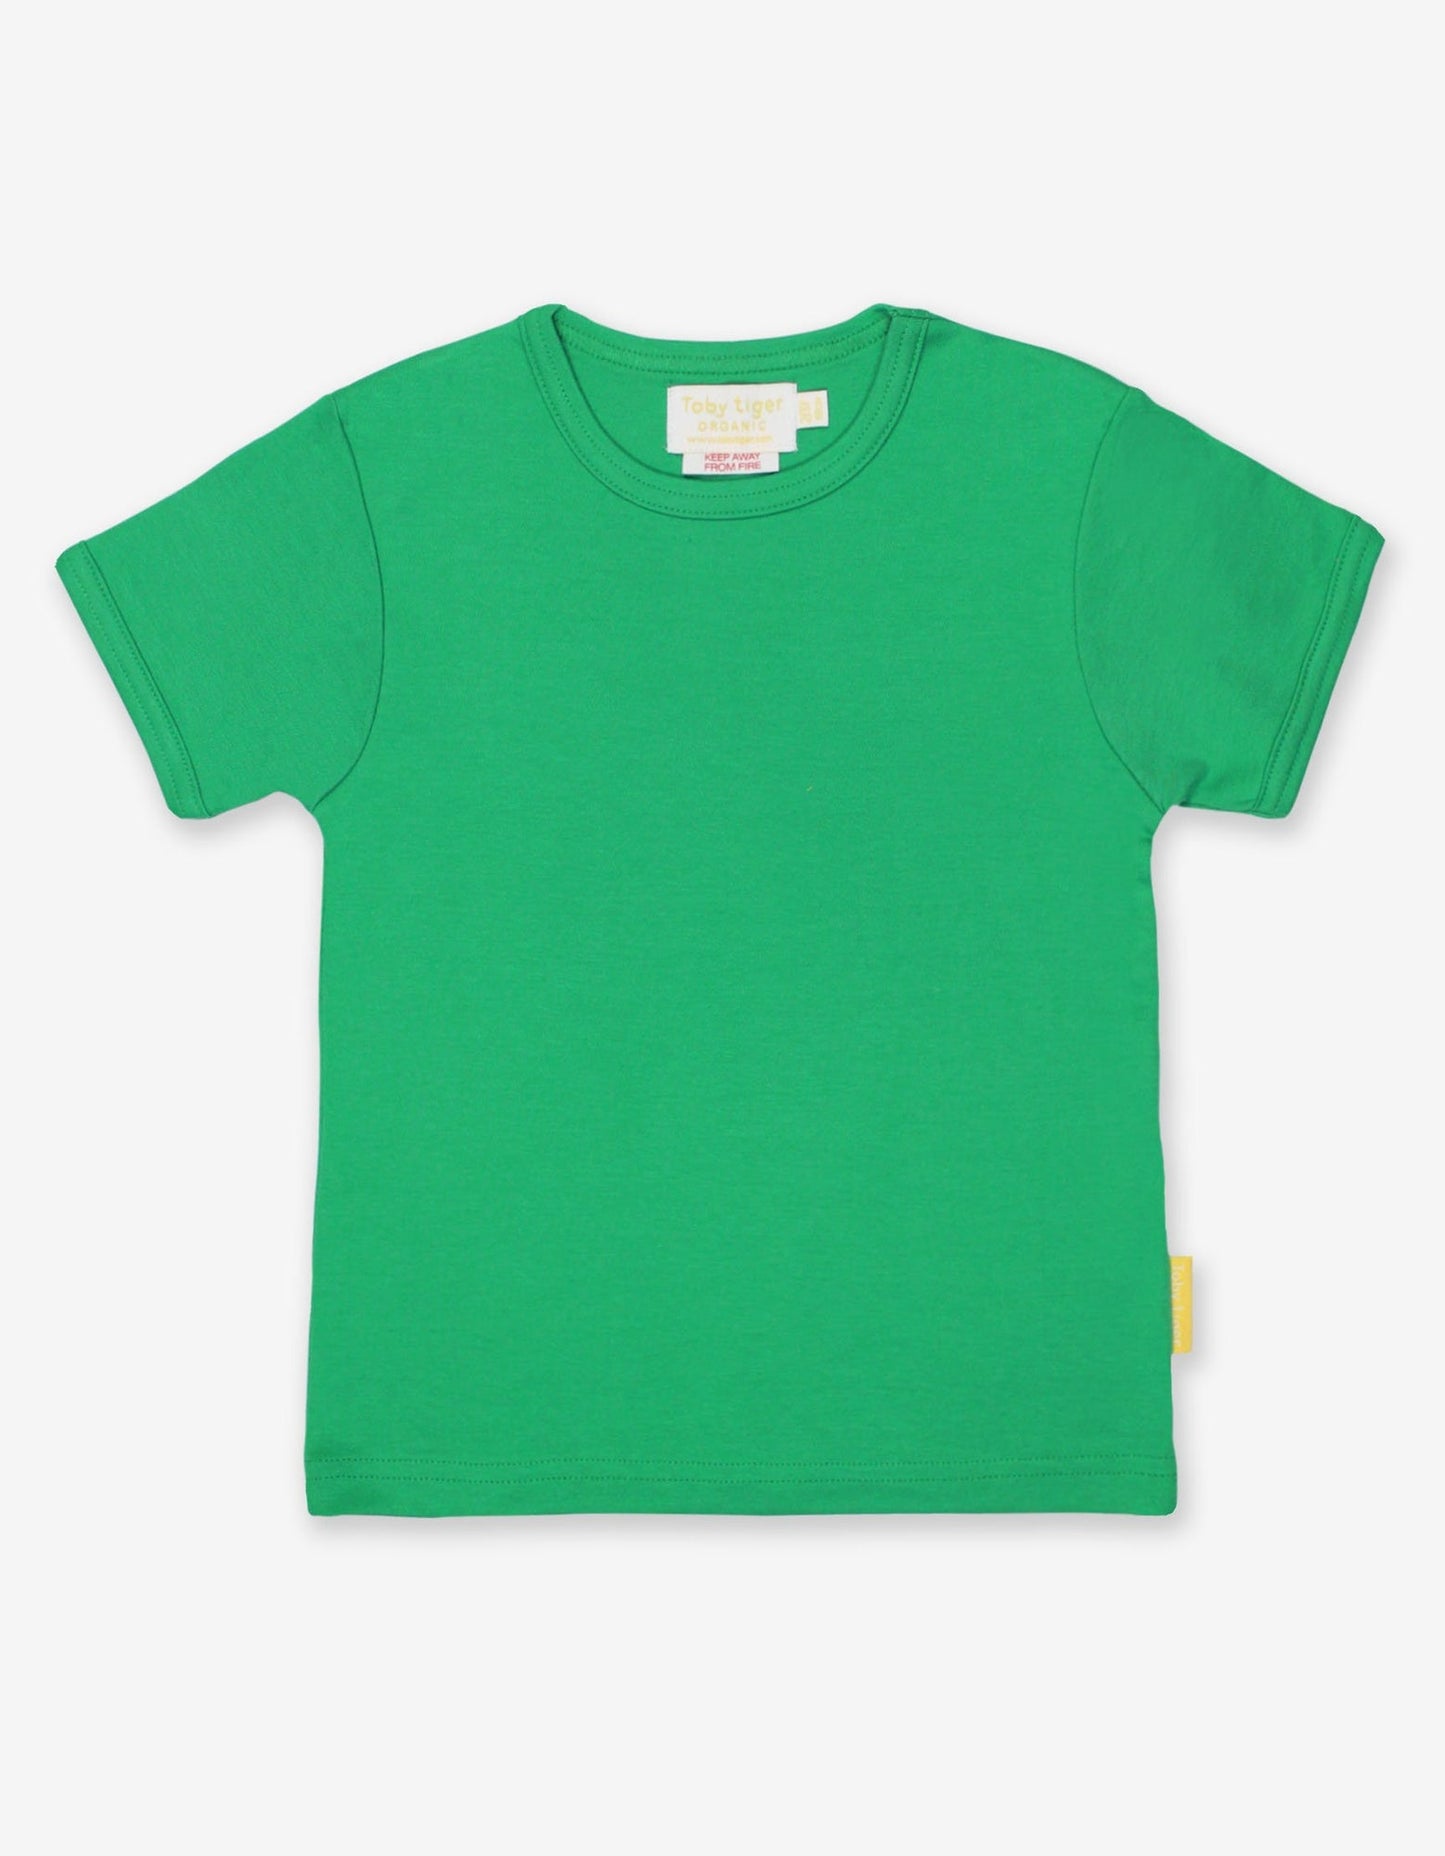 Green Short Sleeve T-Shirt